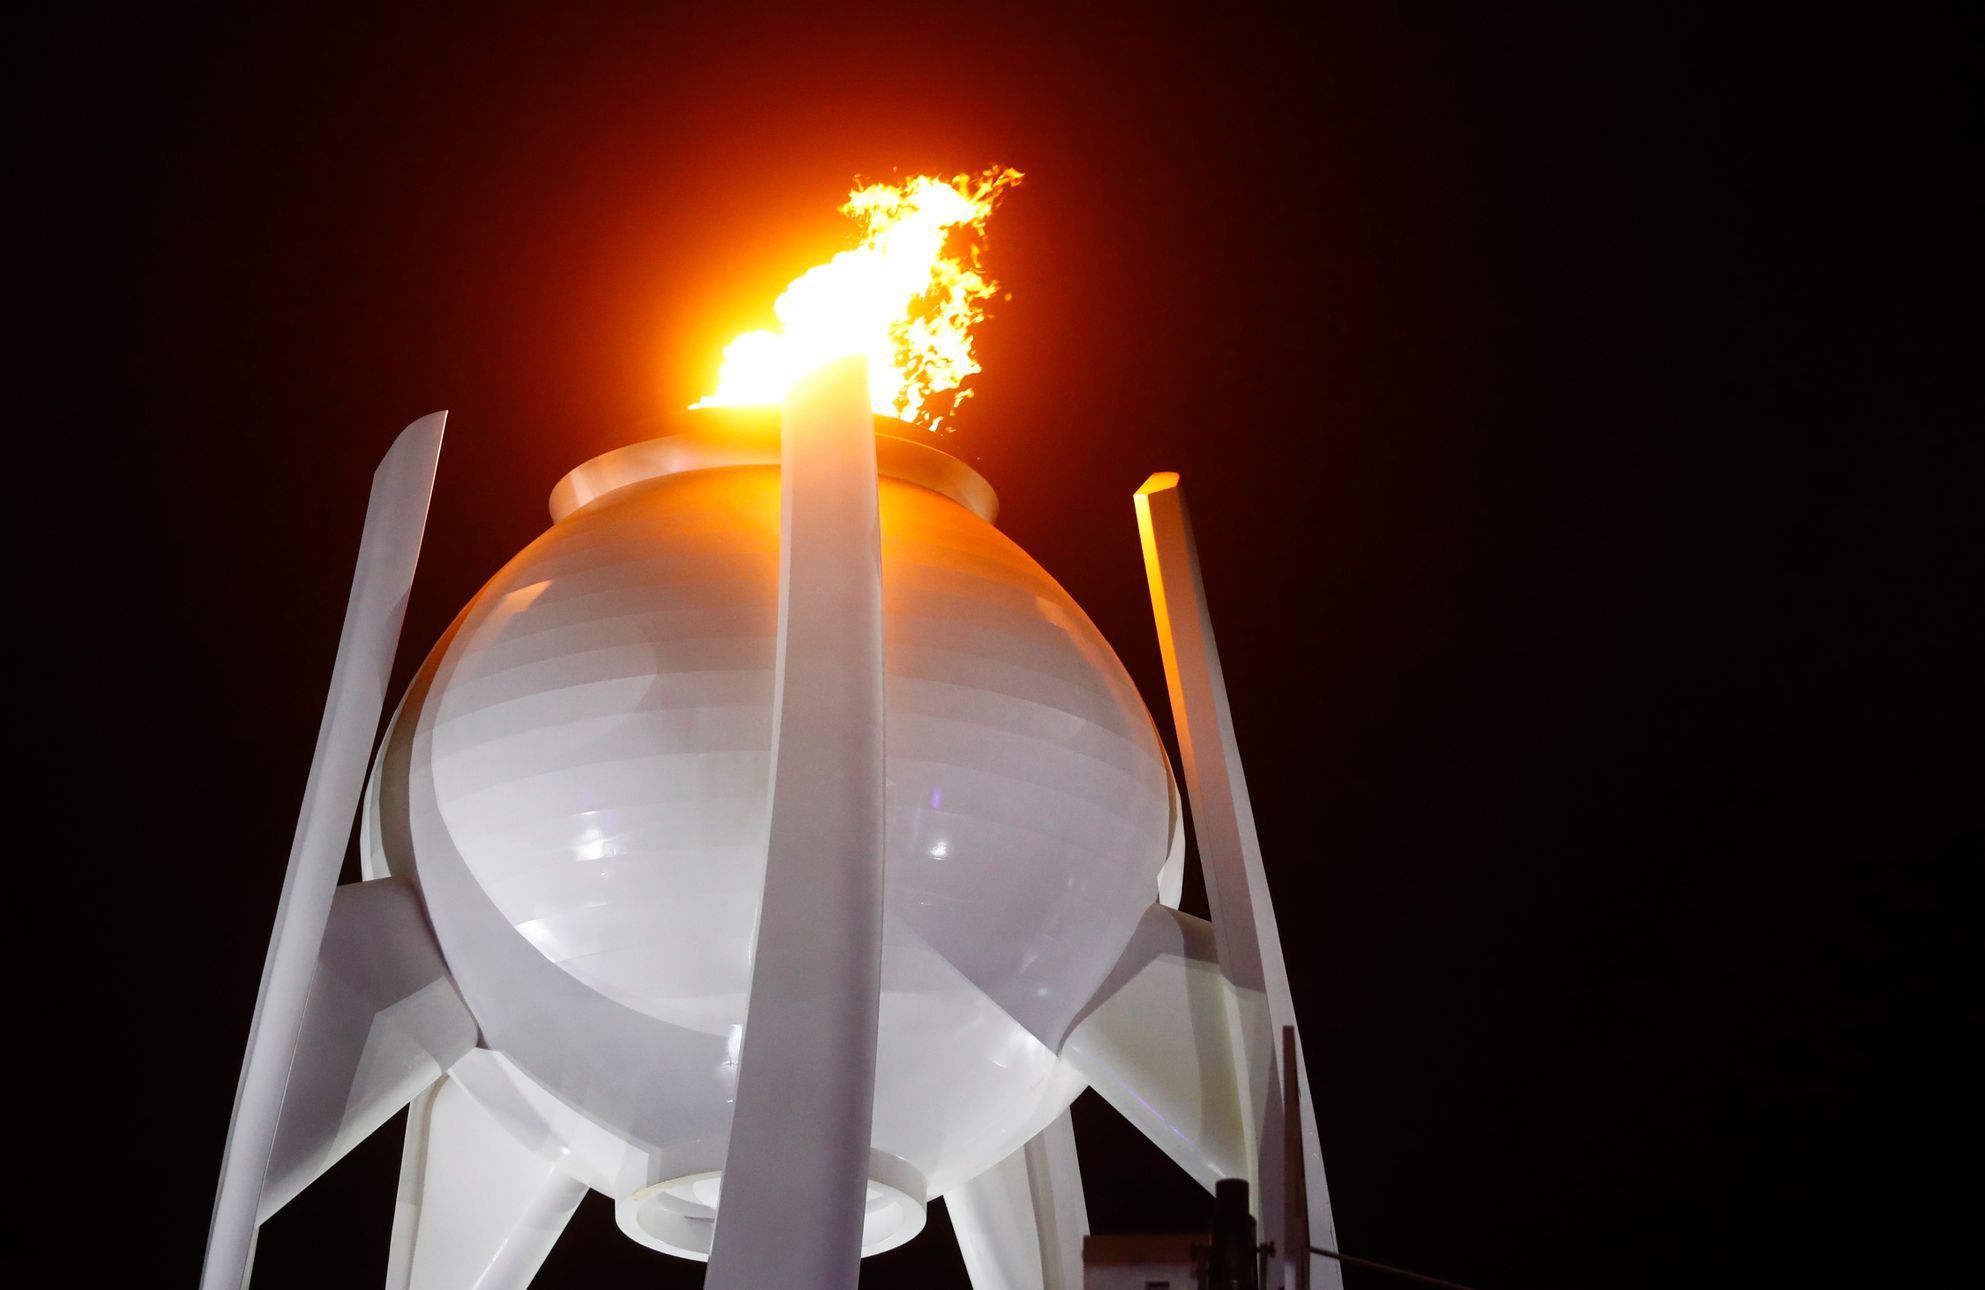 Slavností zakončení ZOH 2018: olympijský oheň